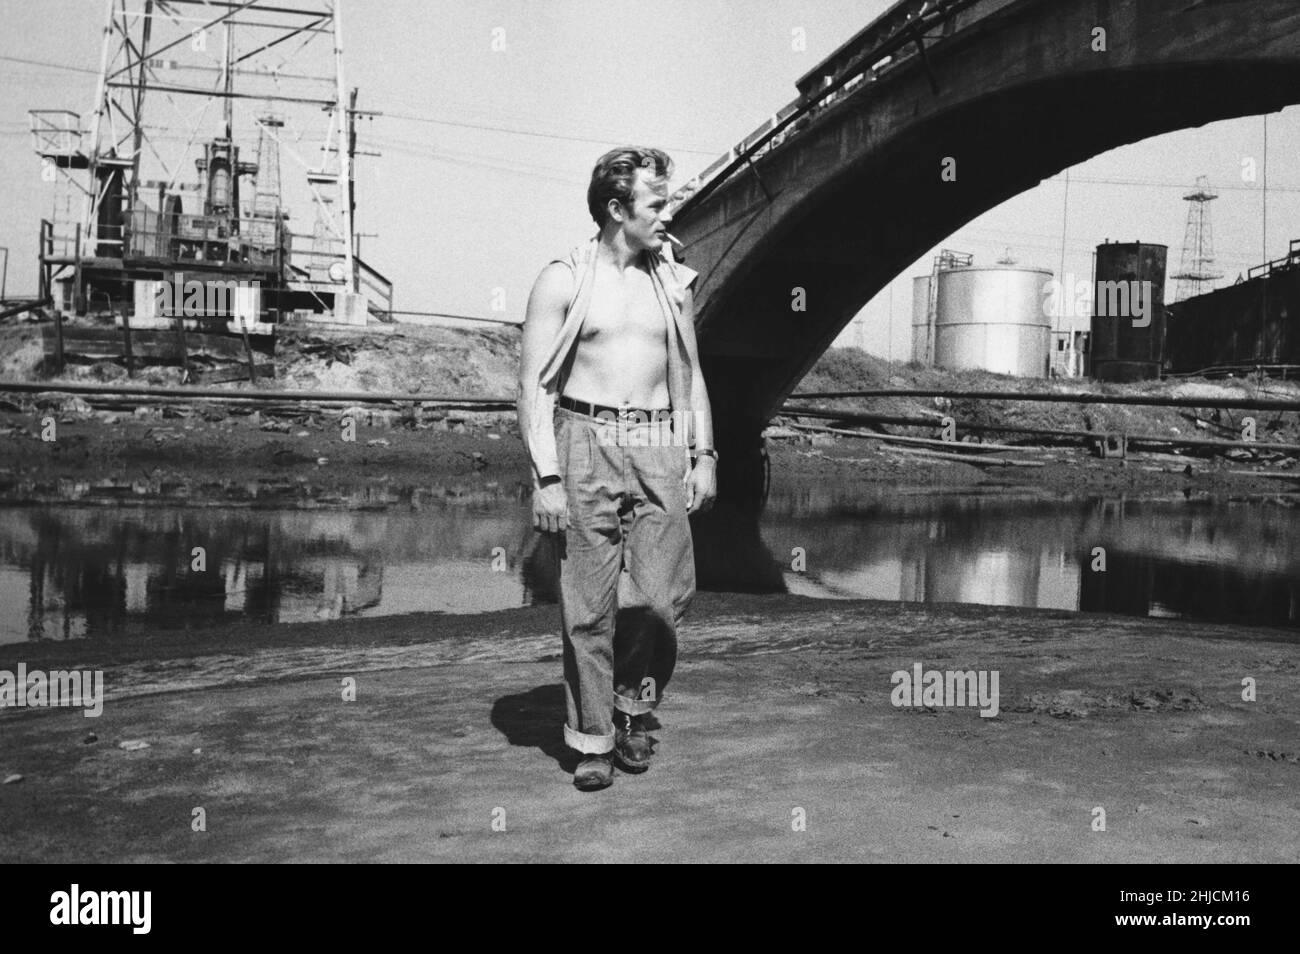 Actor James Dean, photographed circa 1955. Stock Photo